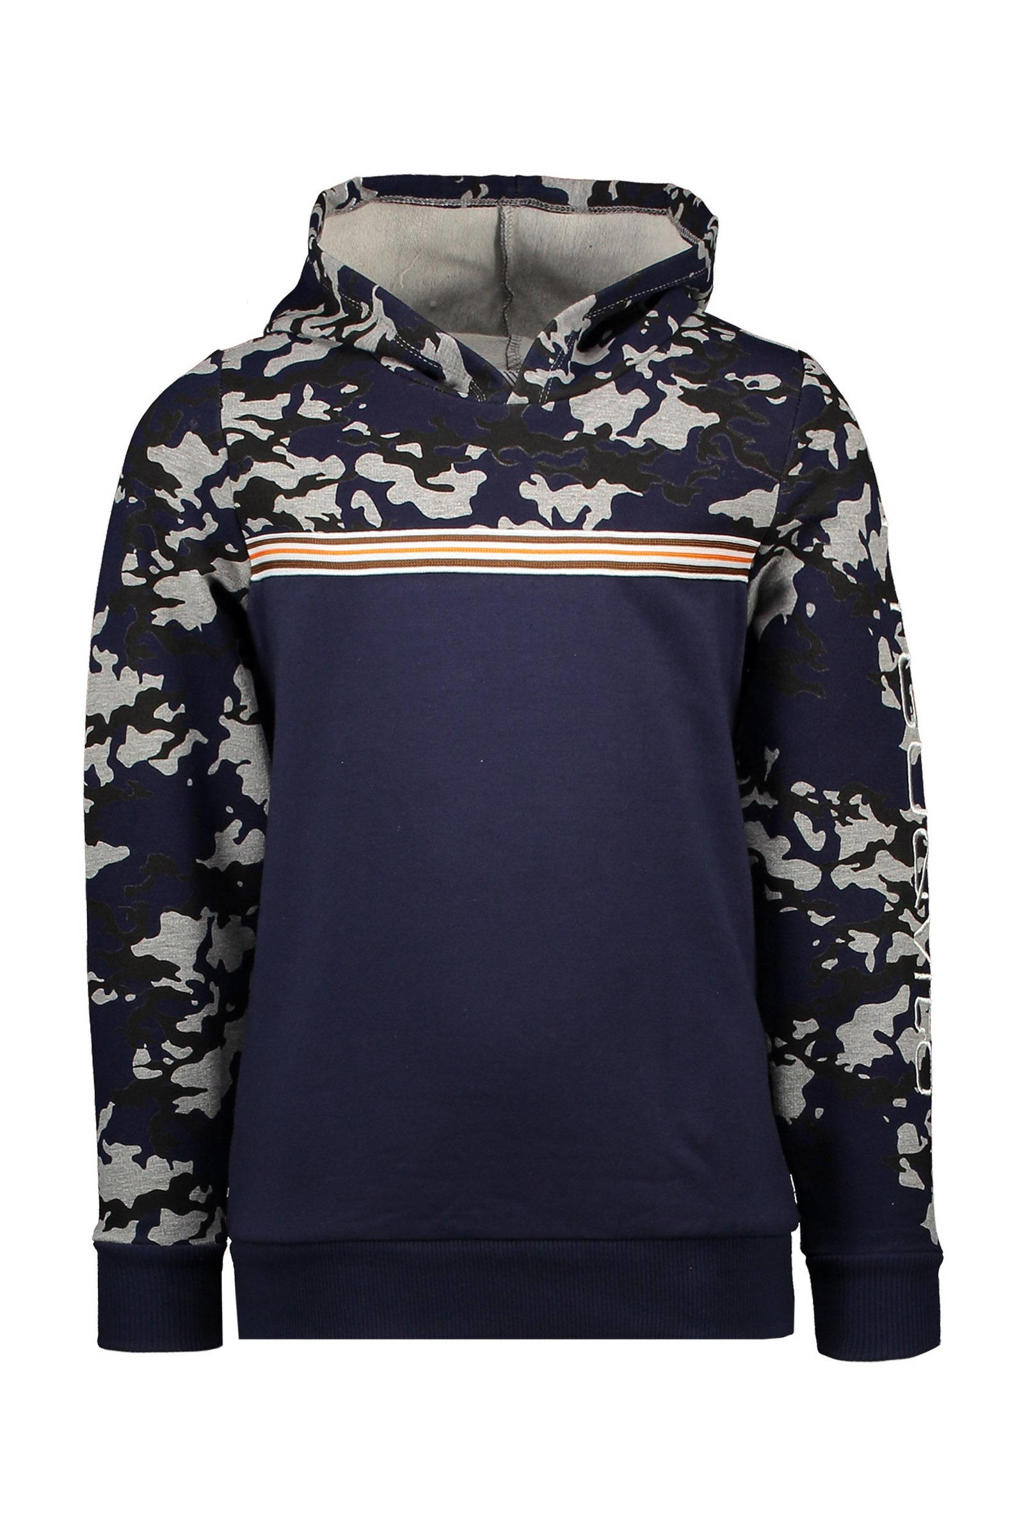 TYGO & vito hoodie met camouflageprint donkerblauw